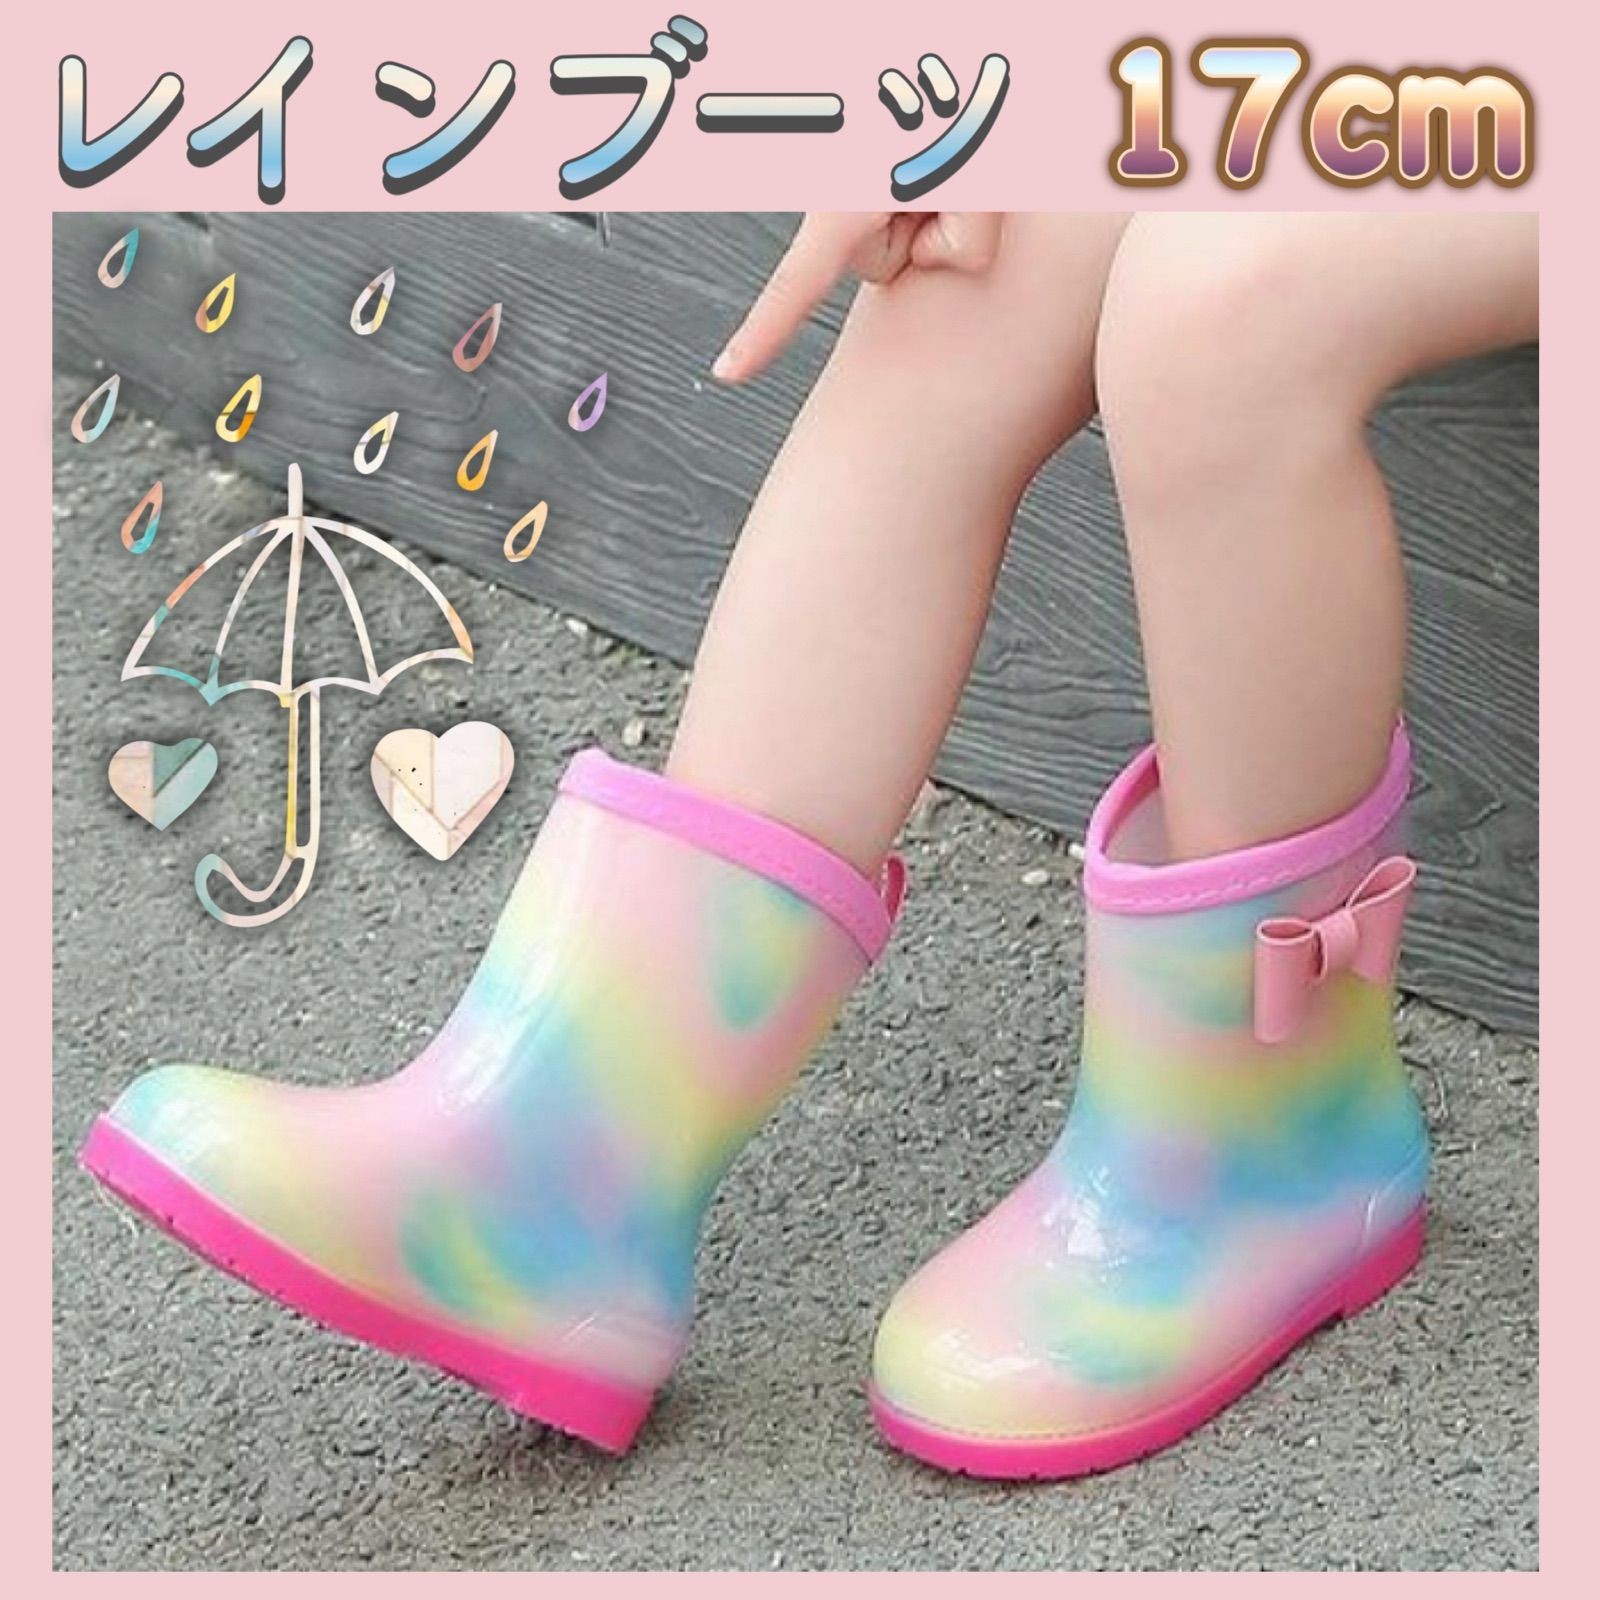 長靴 17cm レインブーツ ピンク 子供 女の子 レインボー 通販